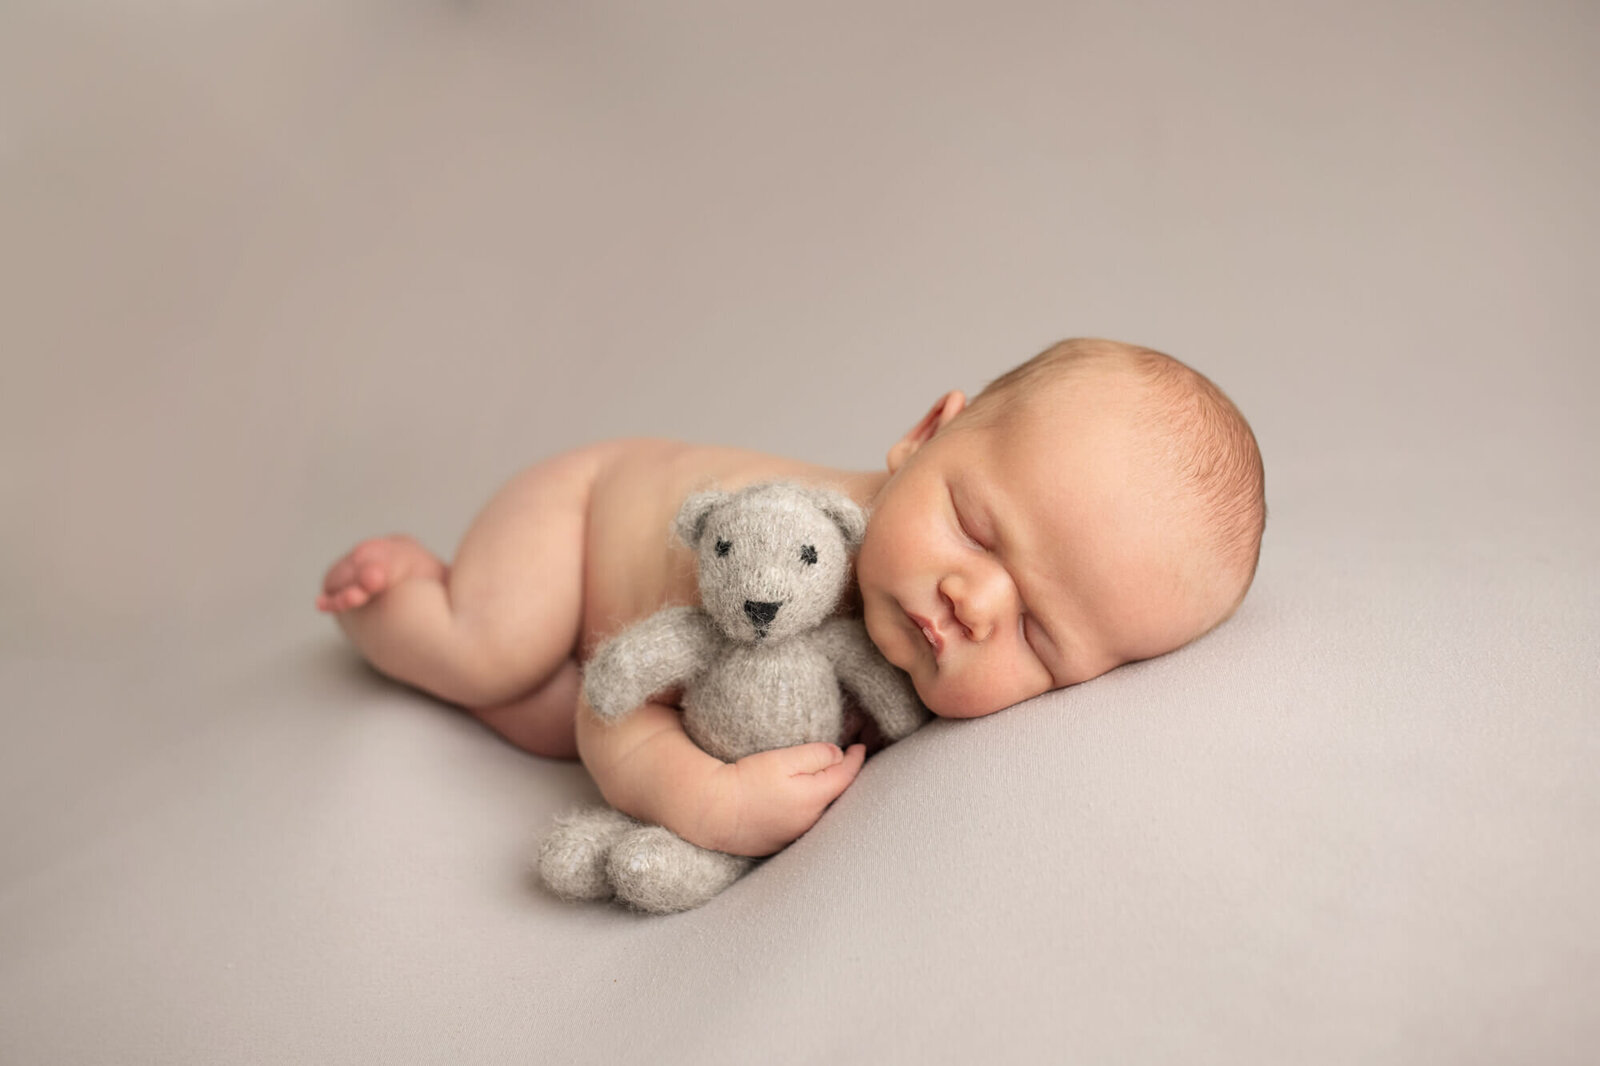 Newborn boy with teddy bear